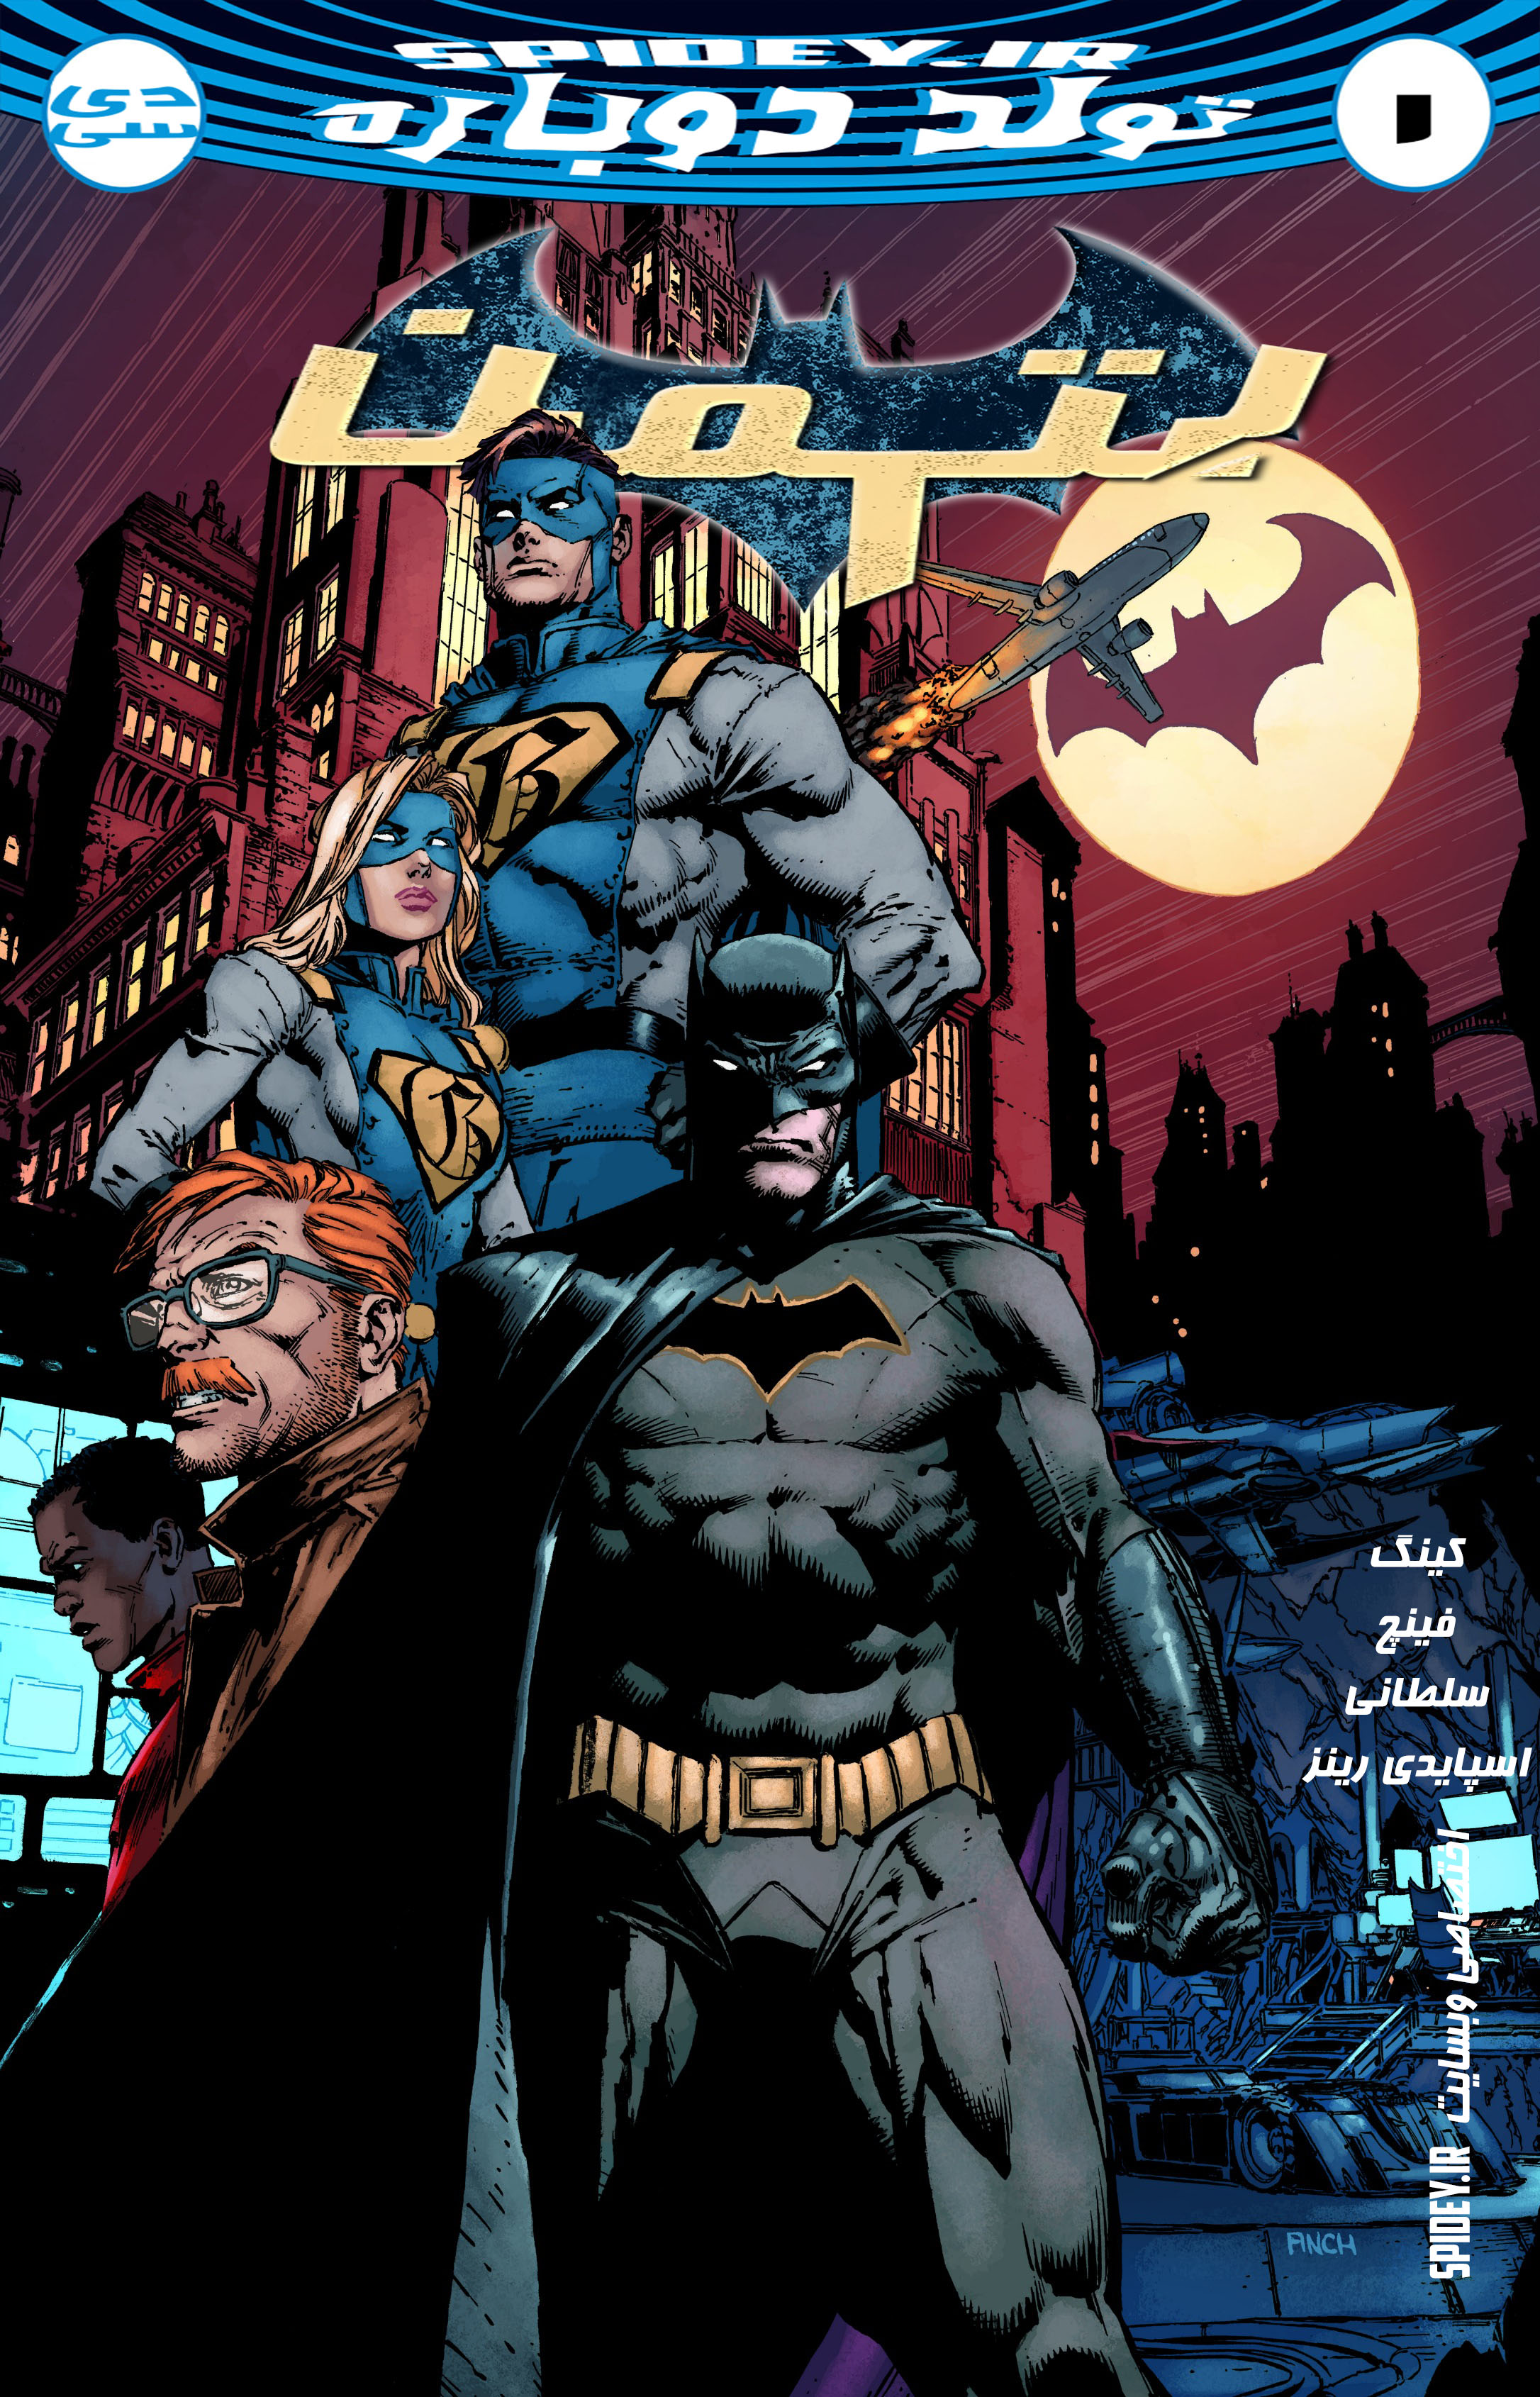 شماره 1 از سری جدید كمیك های "بتمن" (Batman) ترجمه شد + لینك دانلود